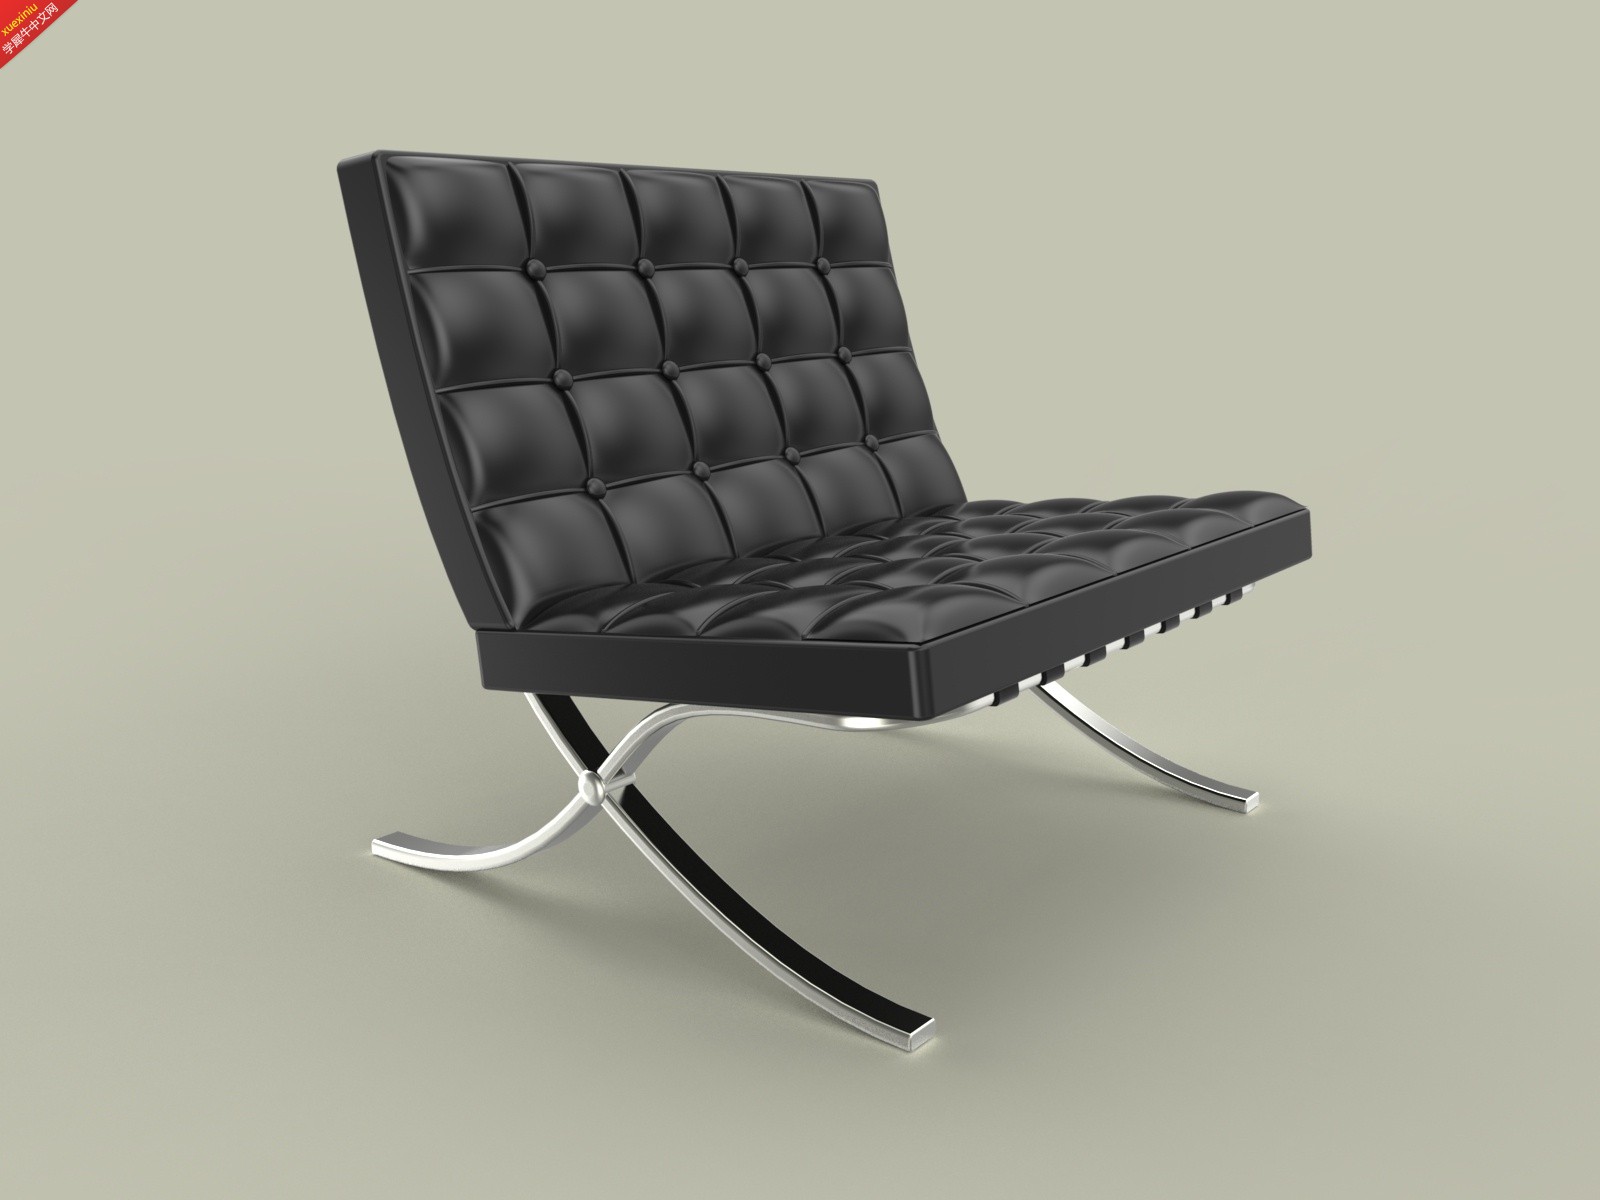 chair 1.jpg